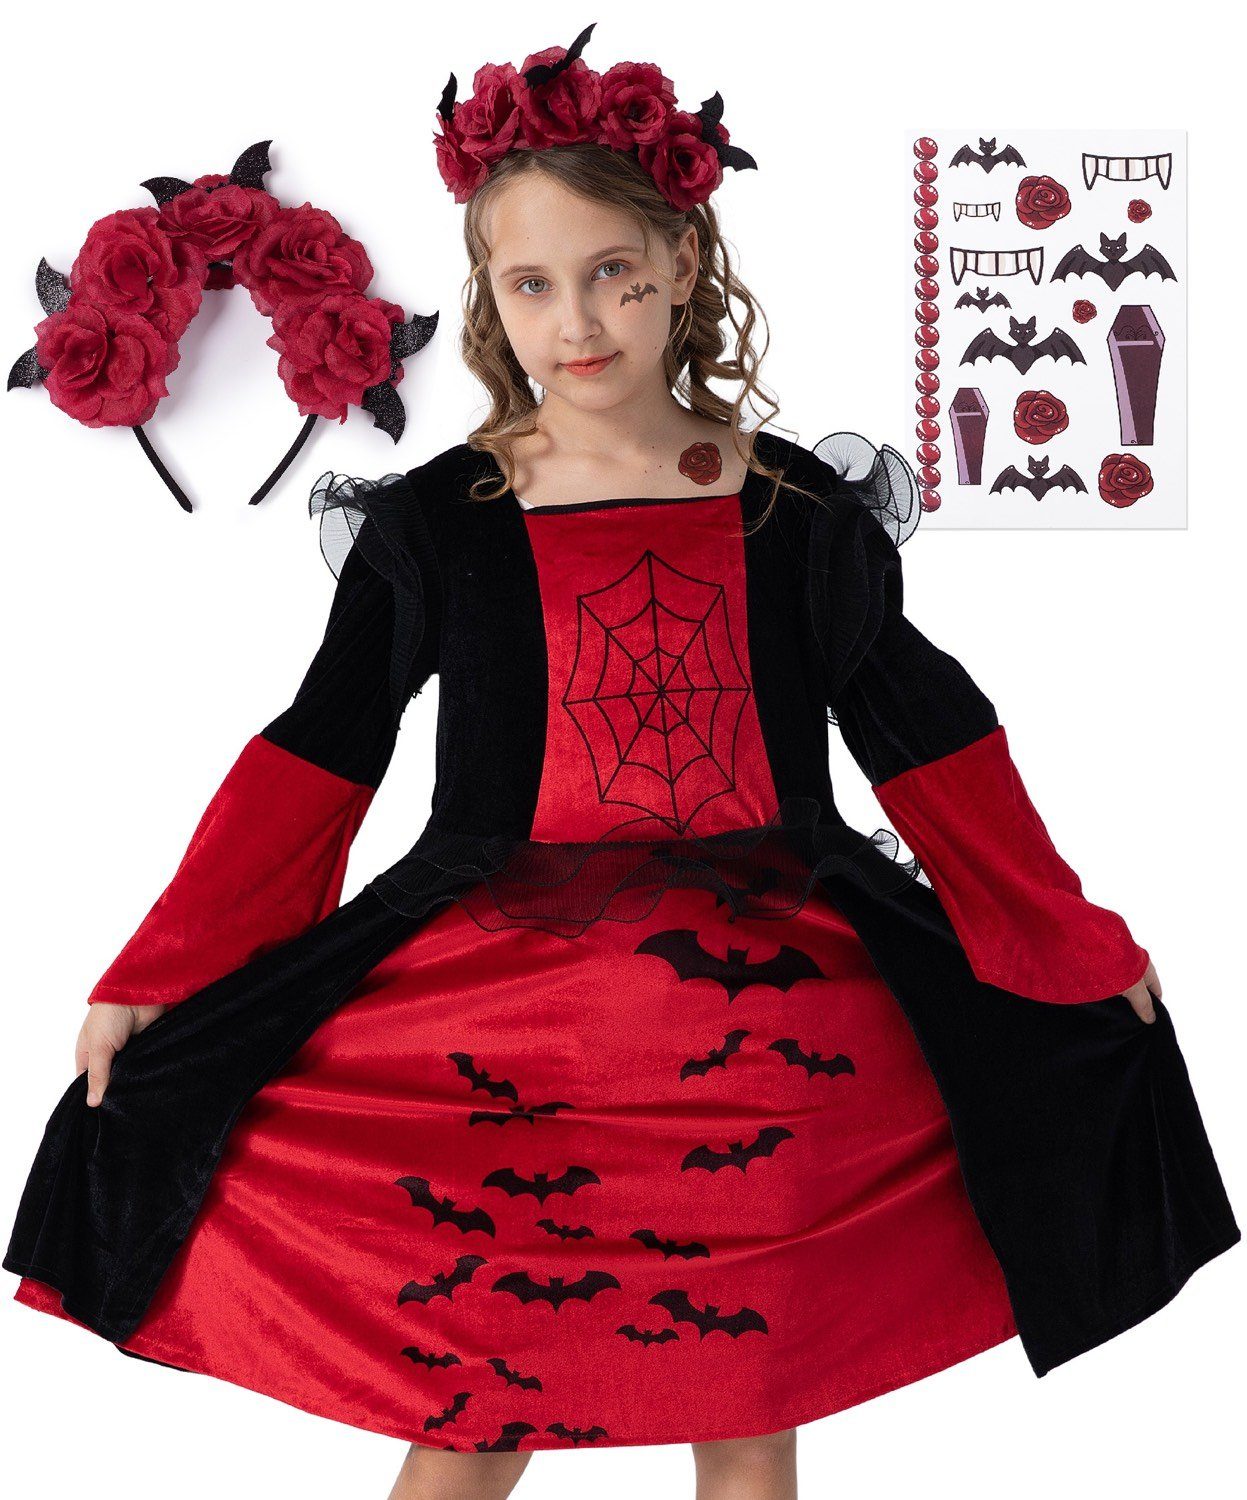 Corimori Vampir-Kostüm Vampir Halloween-Kostüm Set Kinder-Kleid, Karneval, Mit Haarreif, Klebe-Tattoos für Mädchen, Fasching, Karneval, Fasching